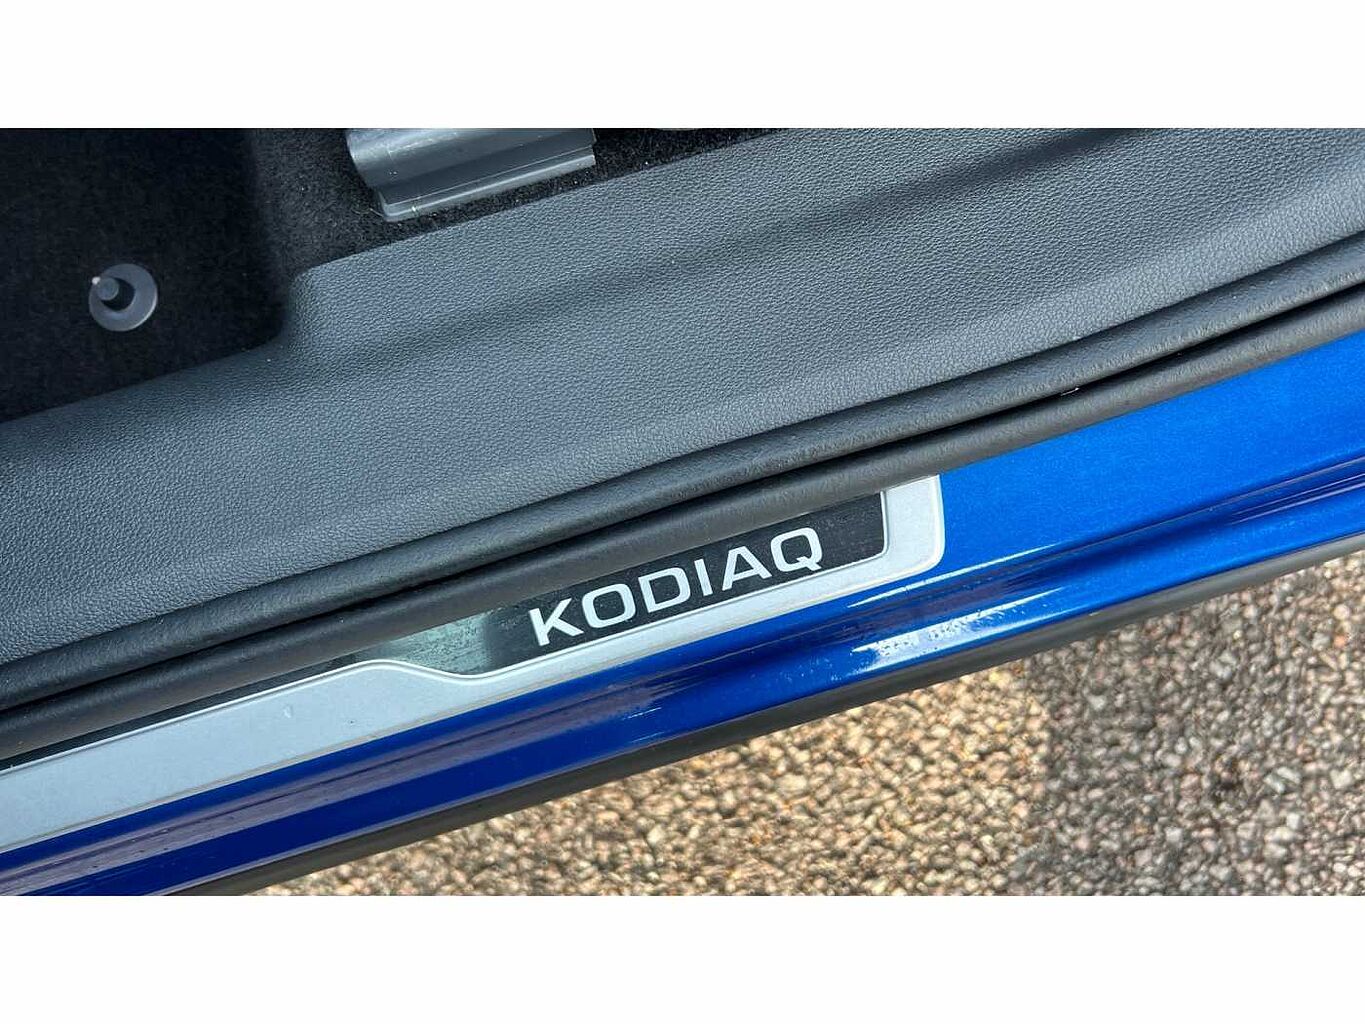 SKODA Kodiaq 2.0 TSI (244ps) 4X4 vRS (7 seats) DSG